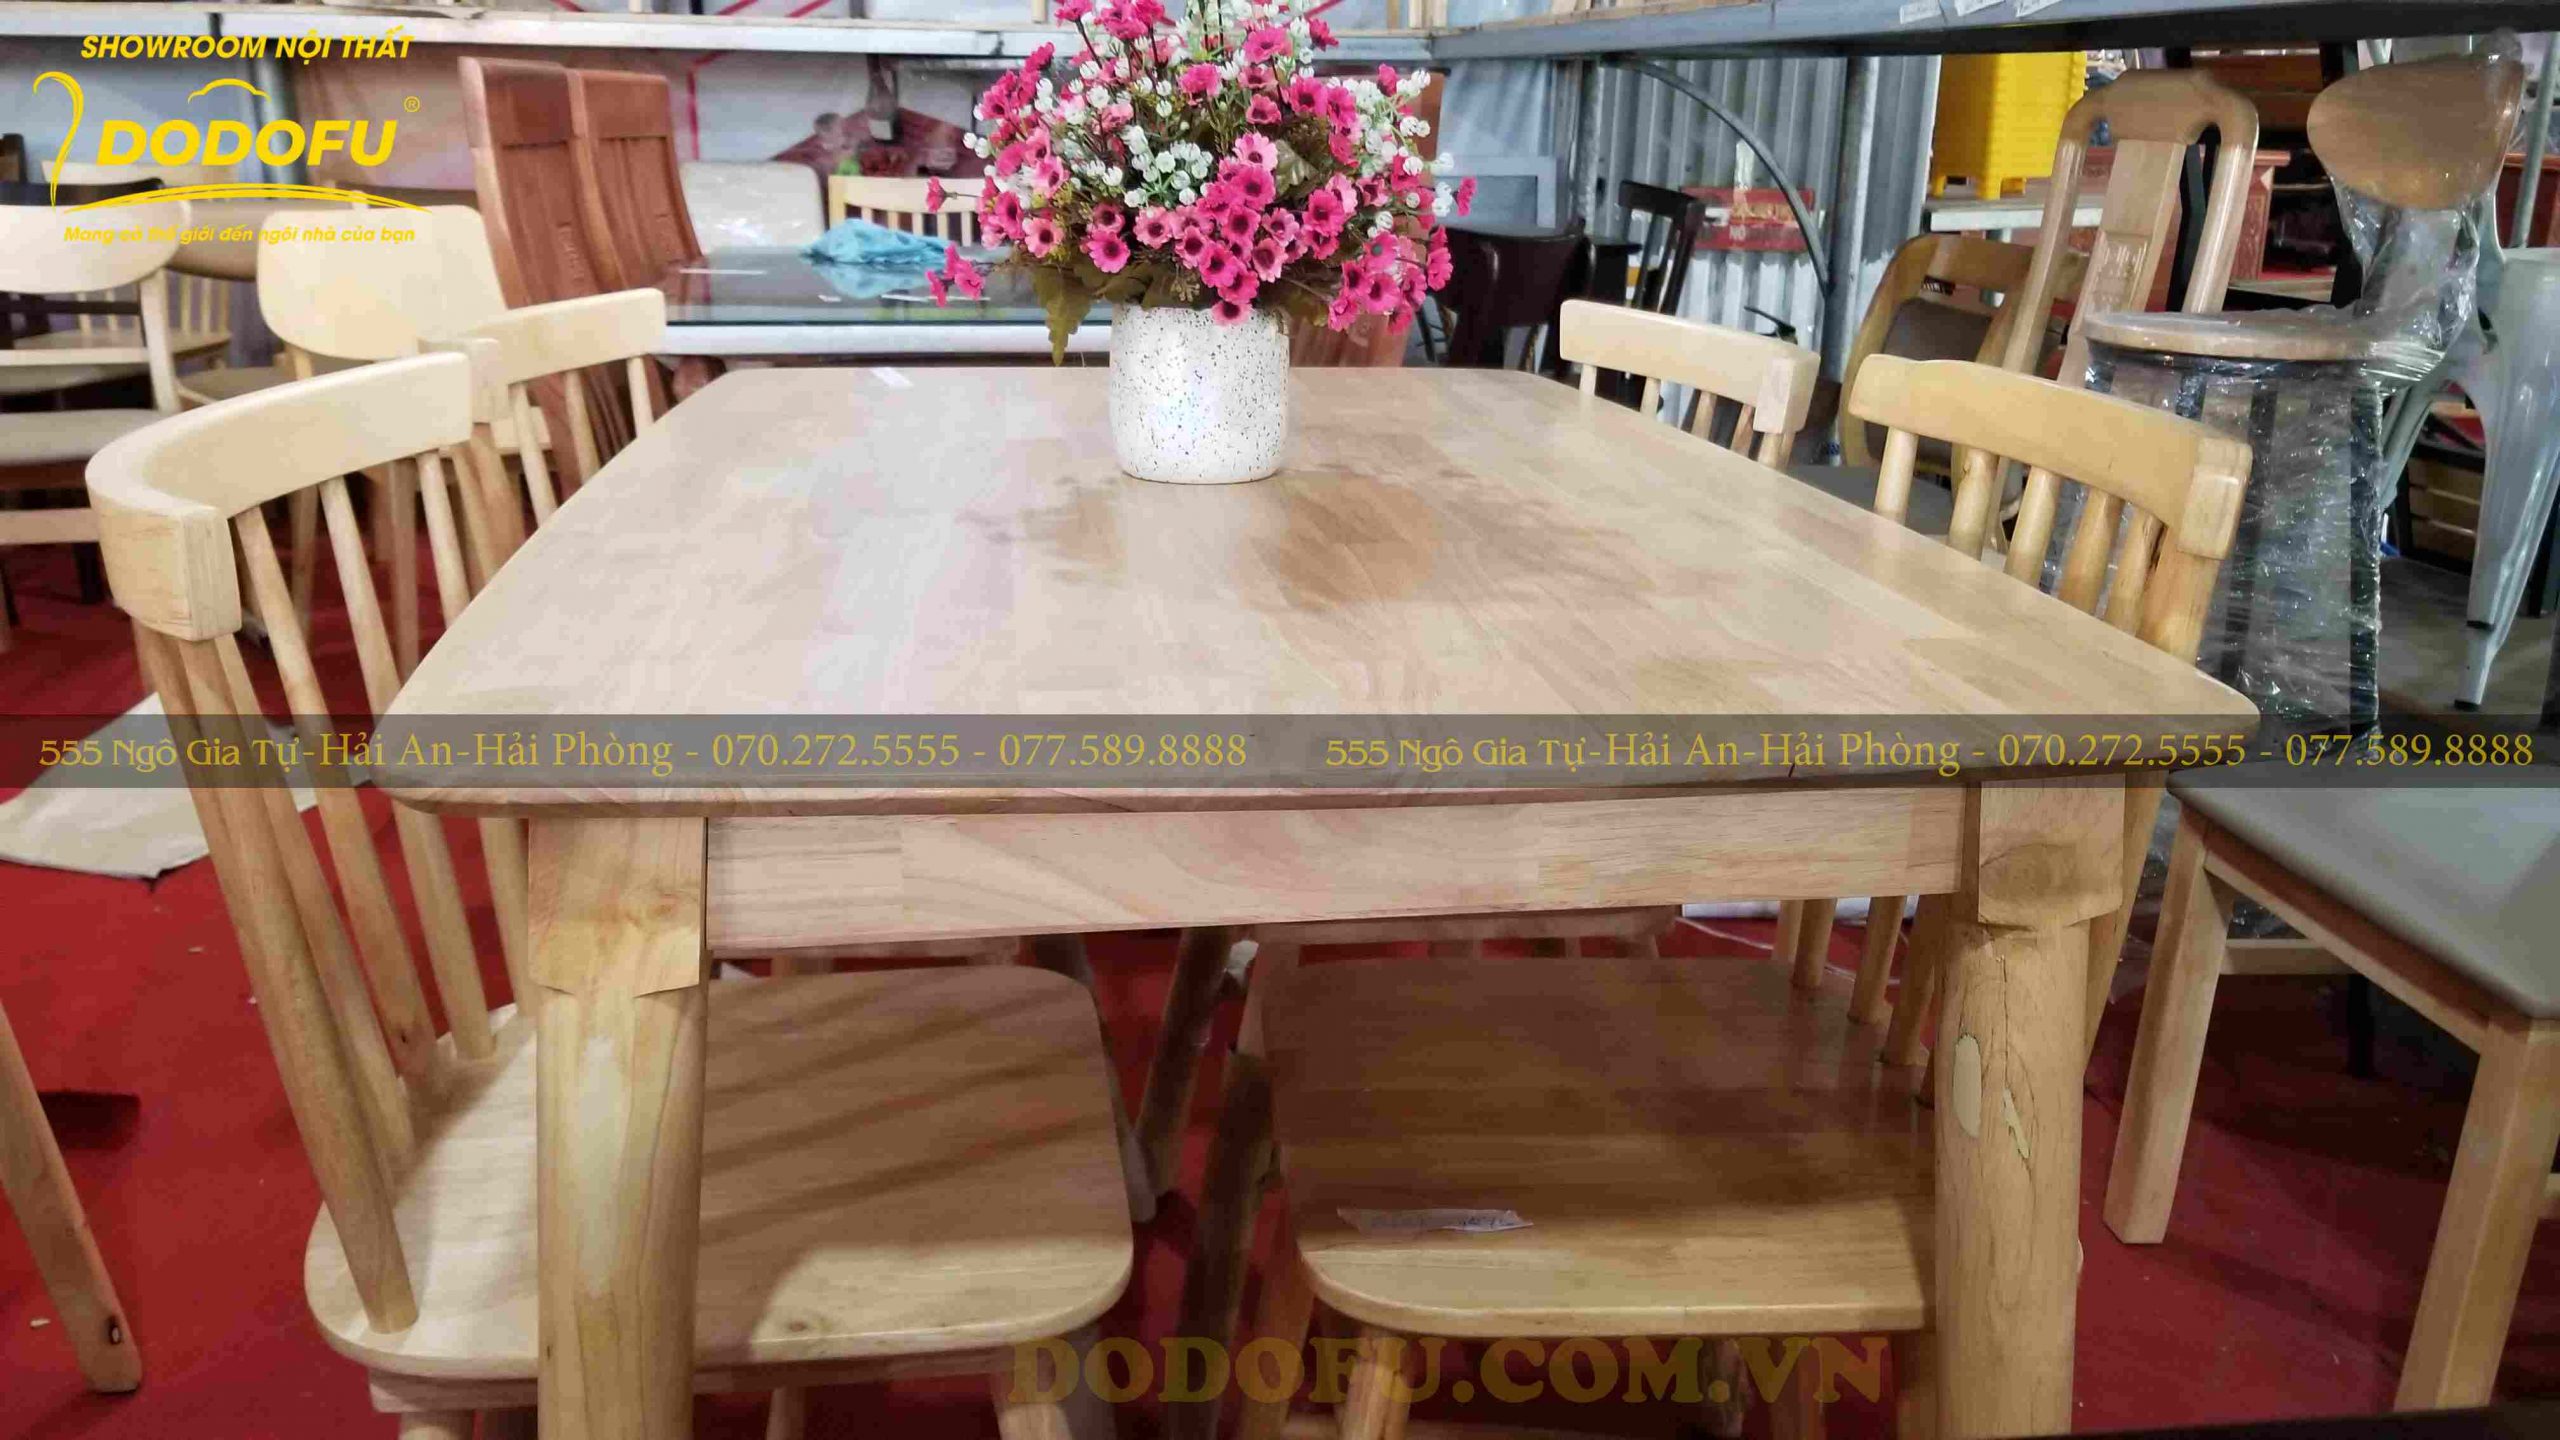 Bộ bàn ăn gỗ sẽ mang đến cho không gian nhà bạn không gian sang trọng và ấm cúng. Sự tỉ mỉ trong từng chi tiết, cùng chất liệu gỗ cao cấp, đảm bảo bạn sẽ thực sự tận hưởng bữa ăn cùng gia đình một cách đầy đủ.